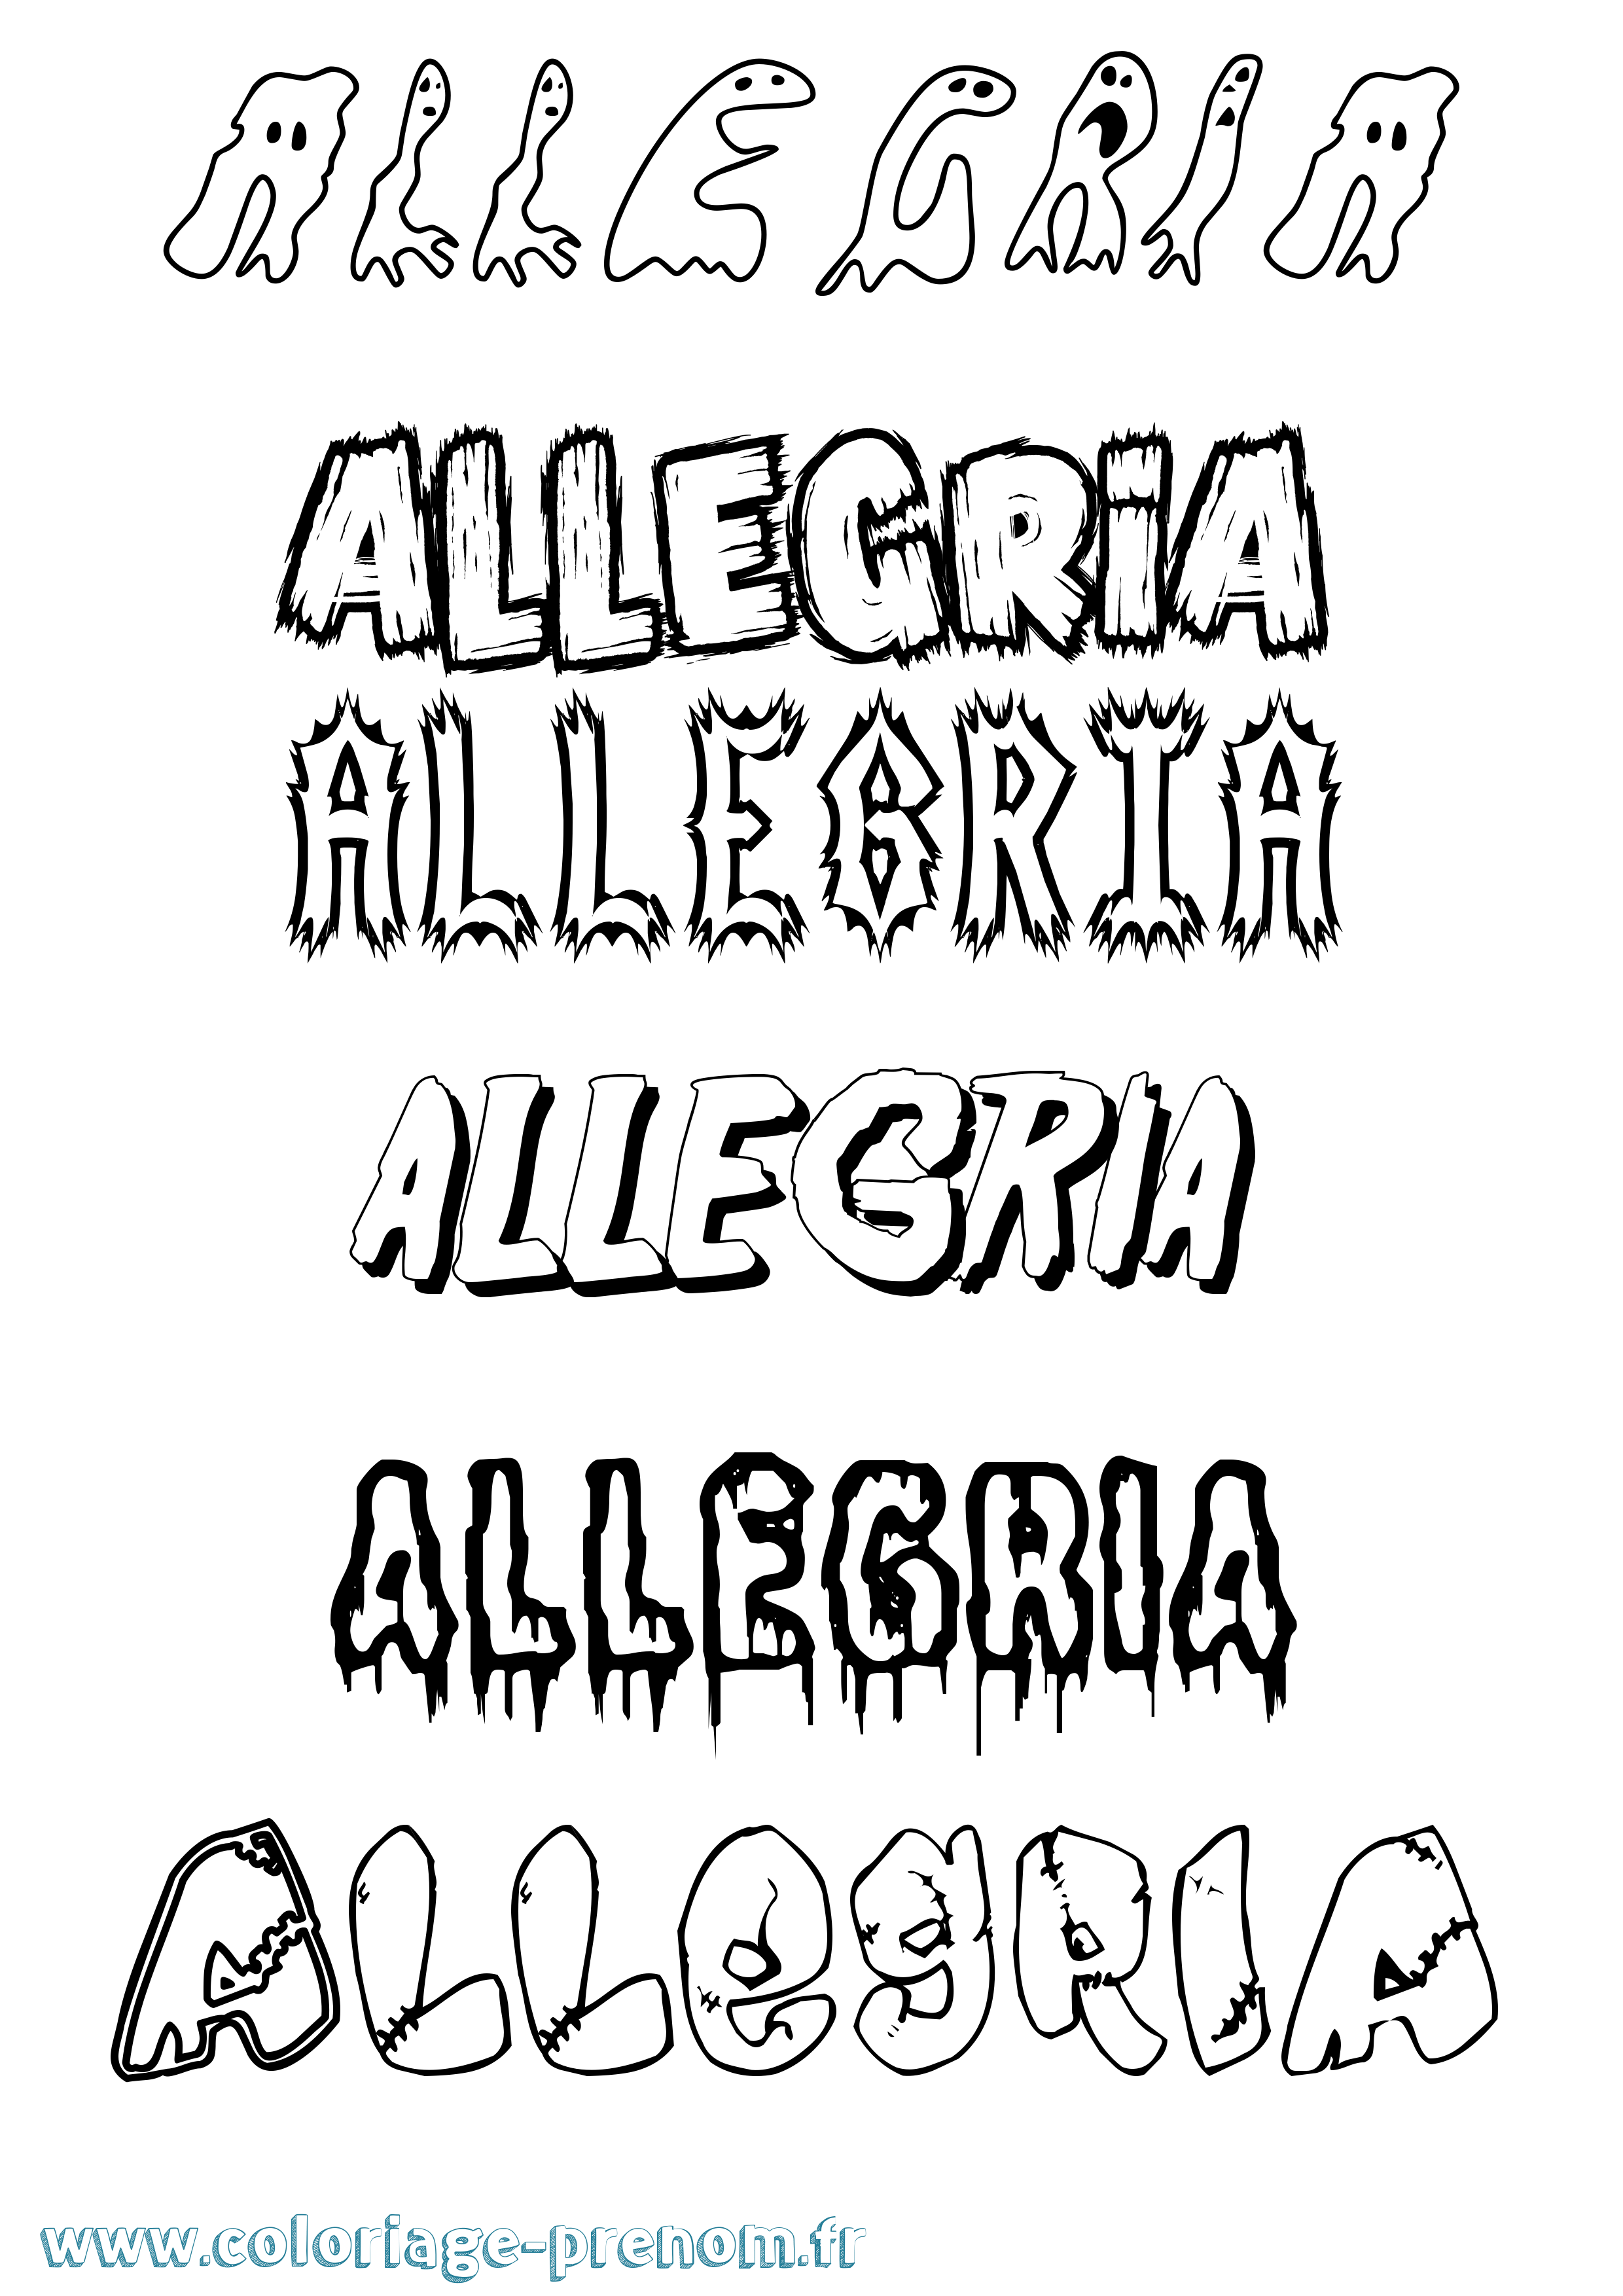 Coloriage prénom Allegria Frisson